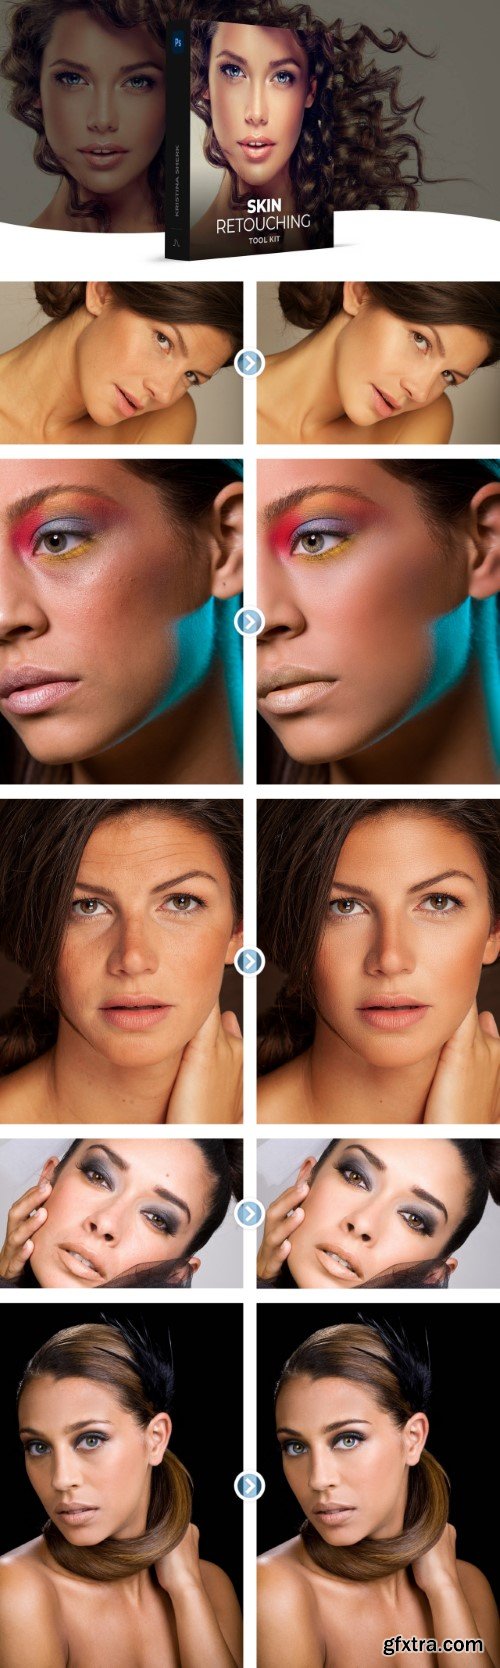 Skin Retouching Photoshop Toolkit - Kristina Sherk